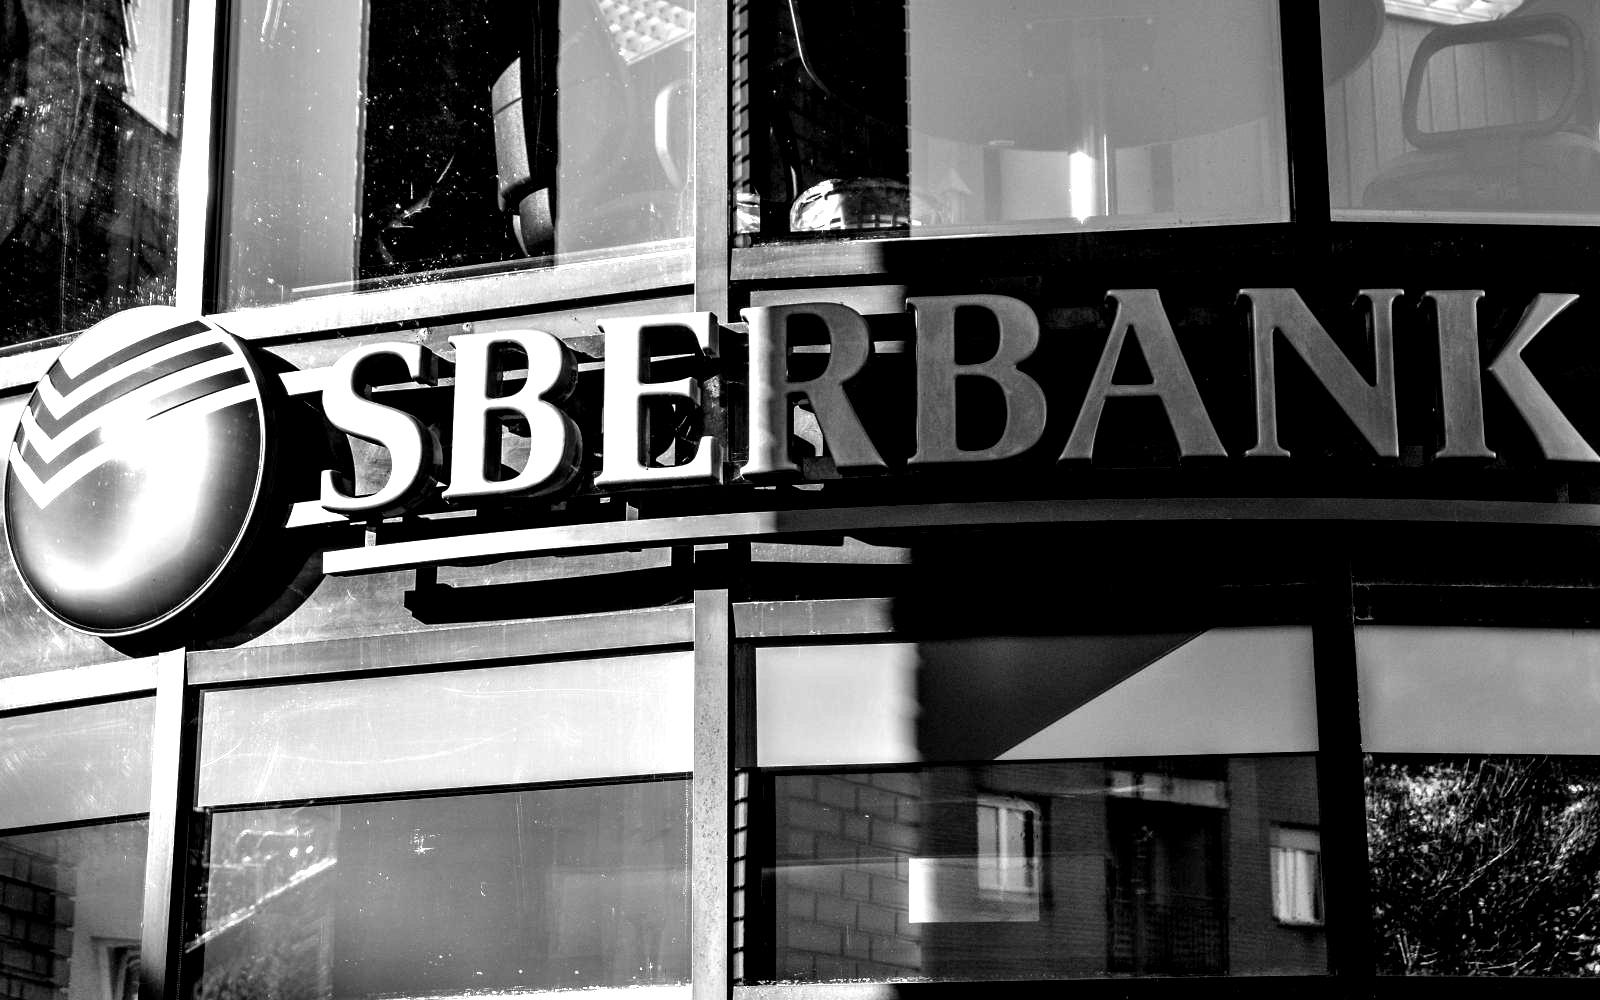 Sberbank-sújtotta övezet: “nem fér a fejembe, hogy miért engedték a banknak, hogy a beérkező pénzeket befogadja, miközben mi nem juthattunk hozzá a saját pénzünkhöz”